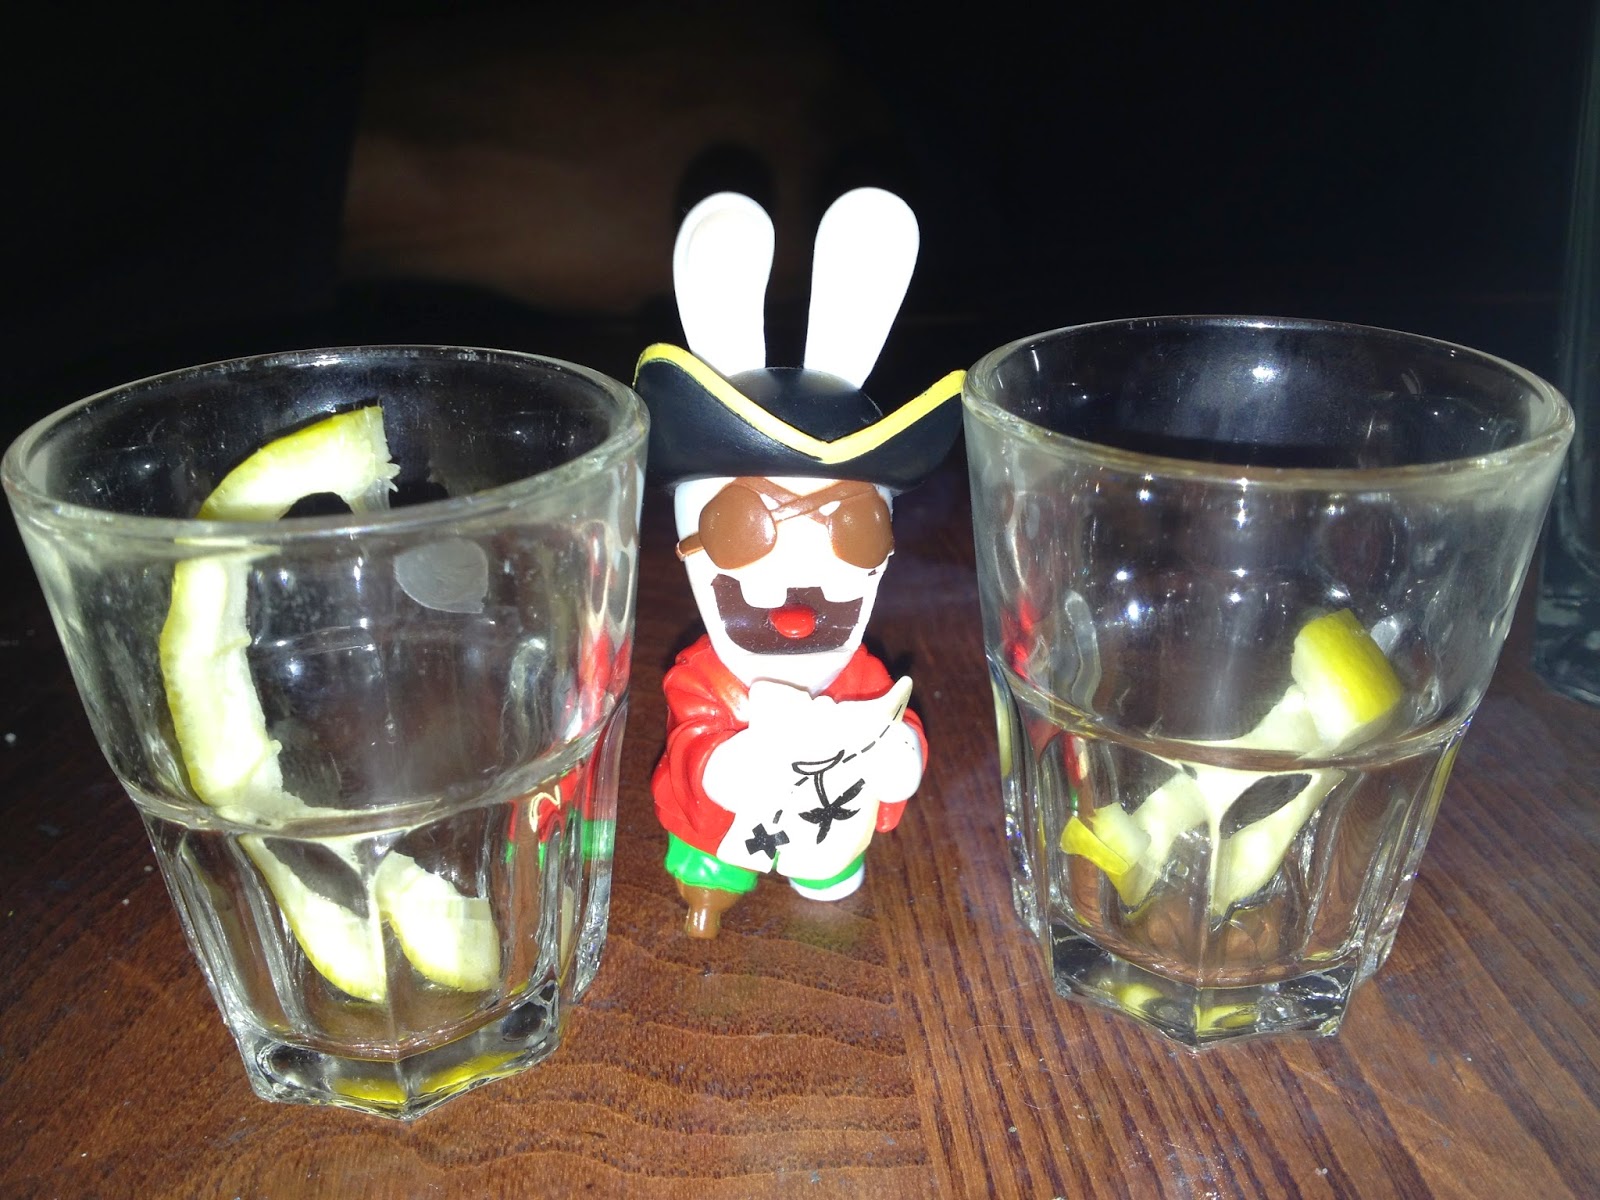 lapins crétins shots tequila londres pub 